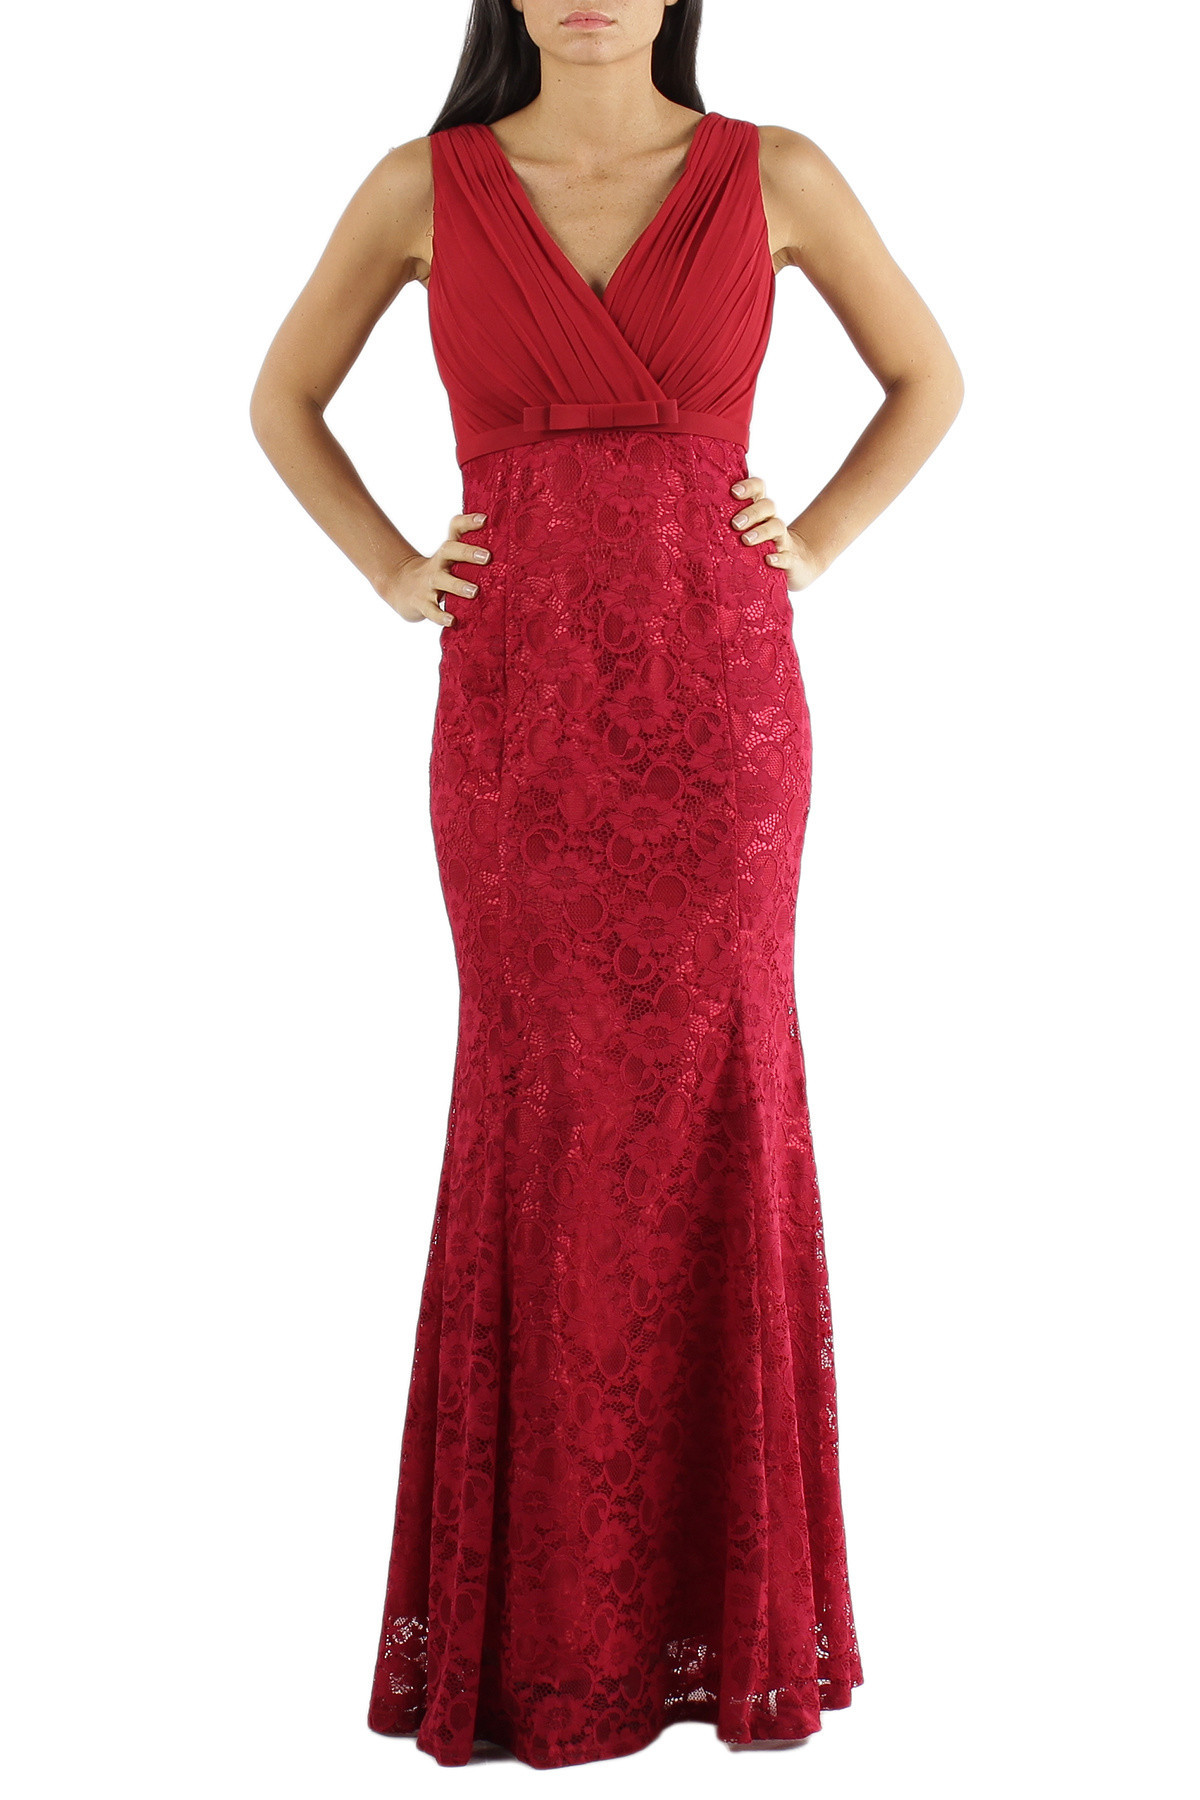 Společenské šaty krajkové dlouhé luxusní značkové CHARM'S Paris červené - Červená - CHARM'S Paris XS